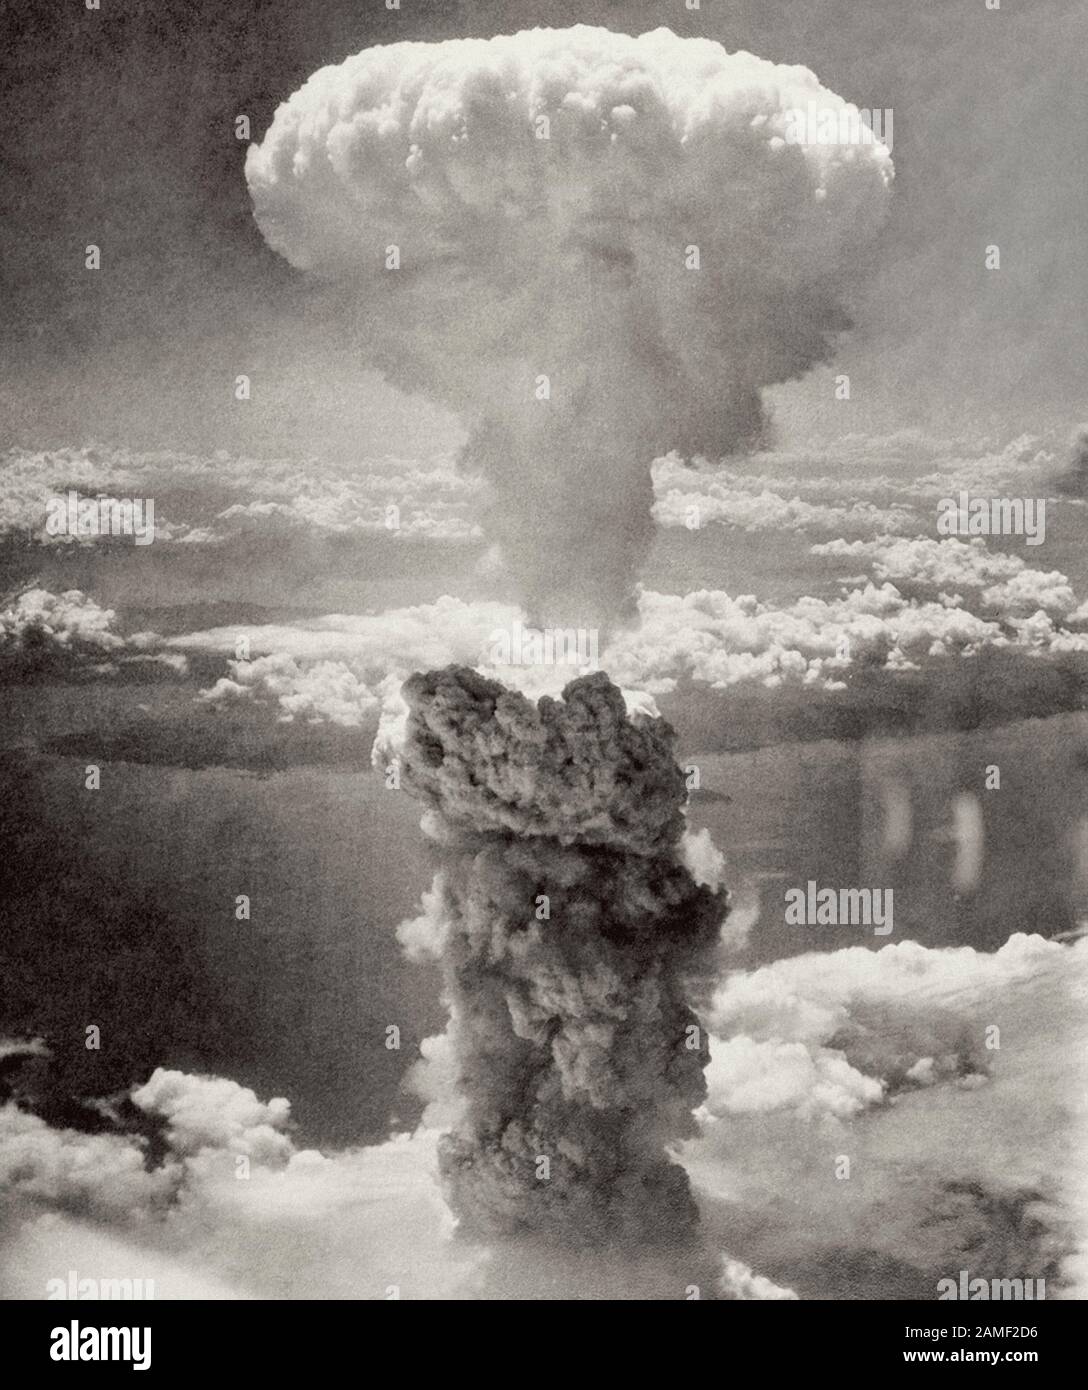 Los días 6 y 9 de agosto de 1945, los Estados Unidos lanzaron bombas nucleares "FAT Man" (en la foto) y "Baby" en las ciudades japonesas de Hiroshima (70 mil peop Foto de stock